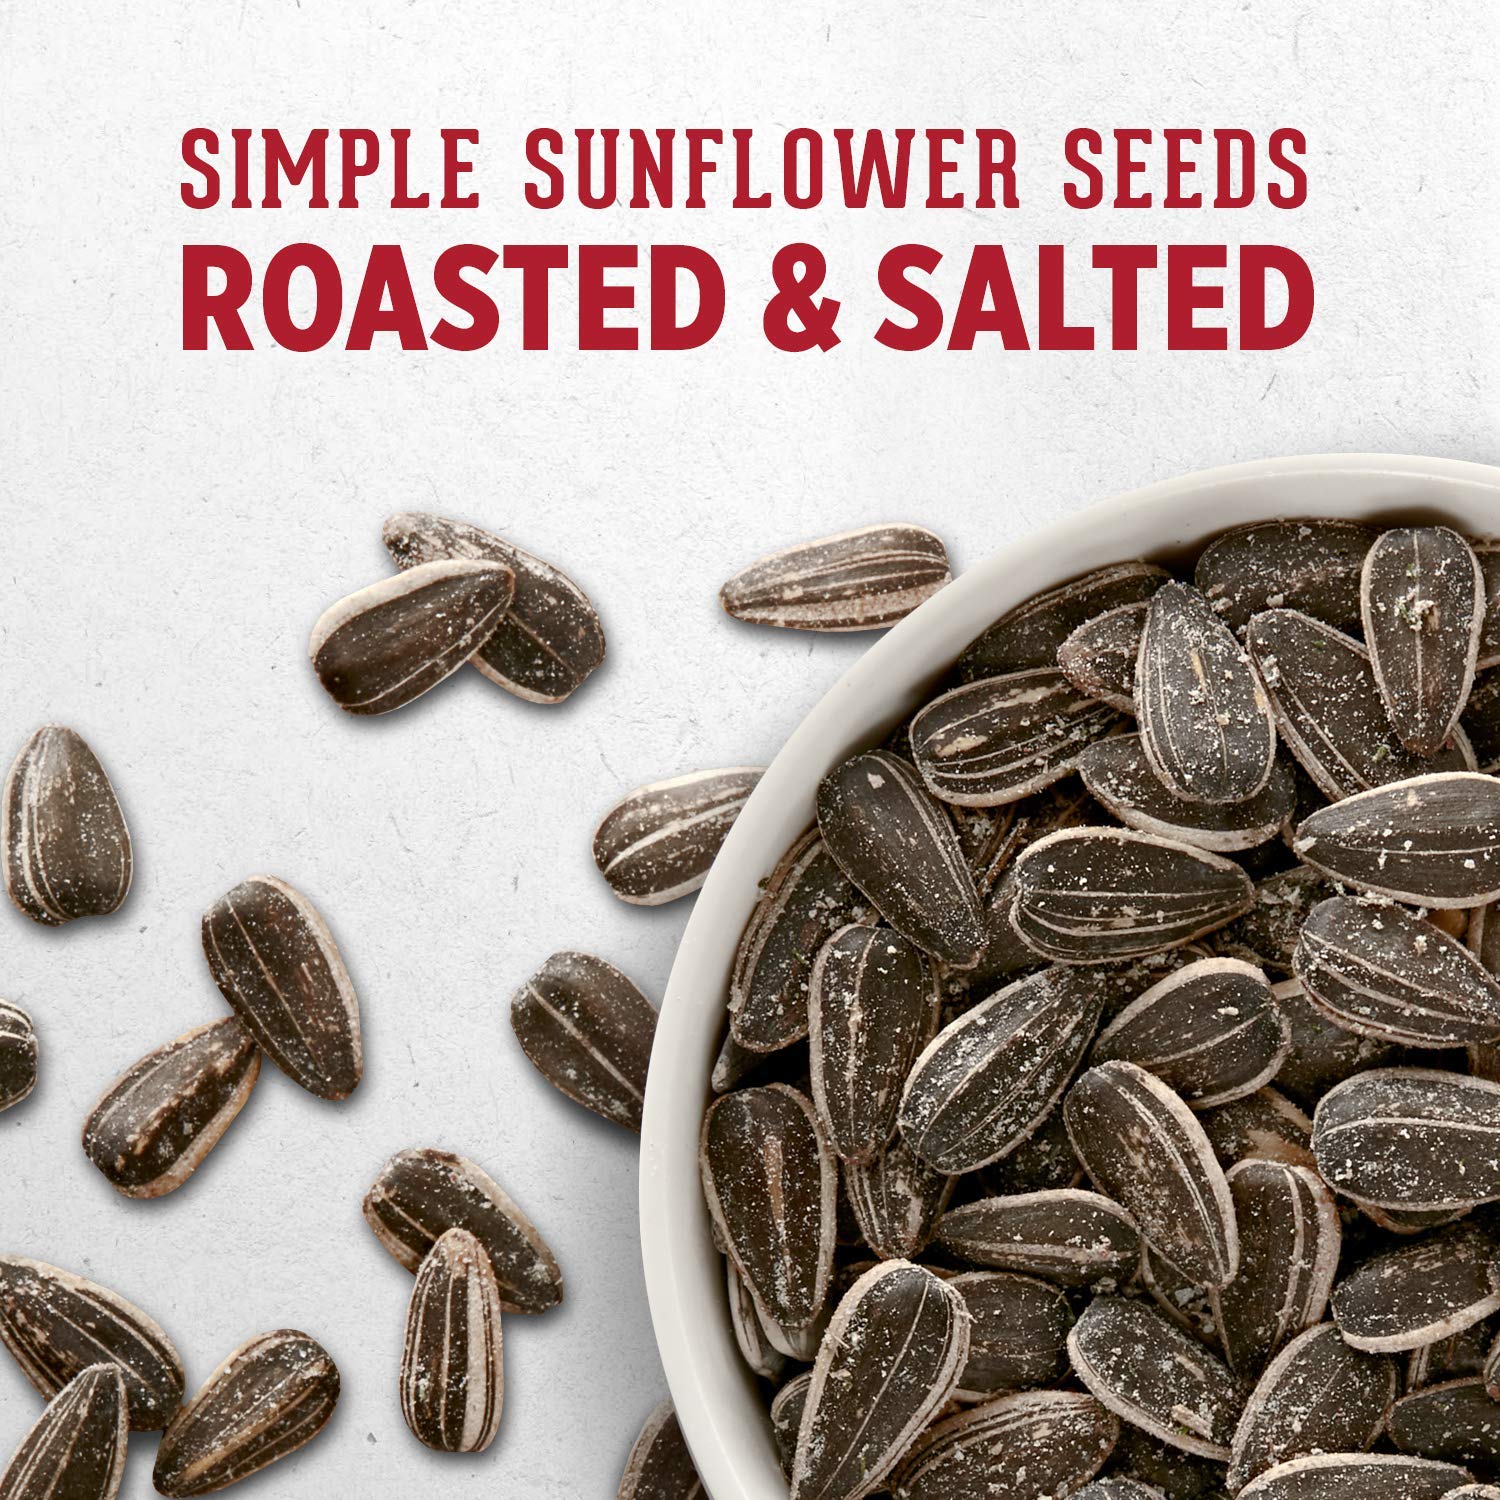 David Seeds Roasted and Salted Original Jumbo Sunflower Seeds, 5.25 Oz